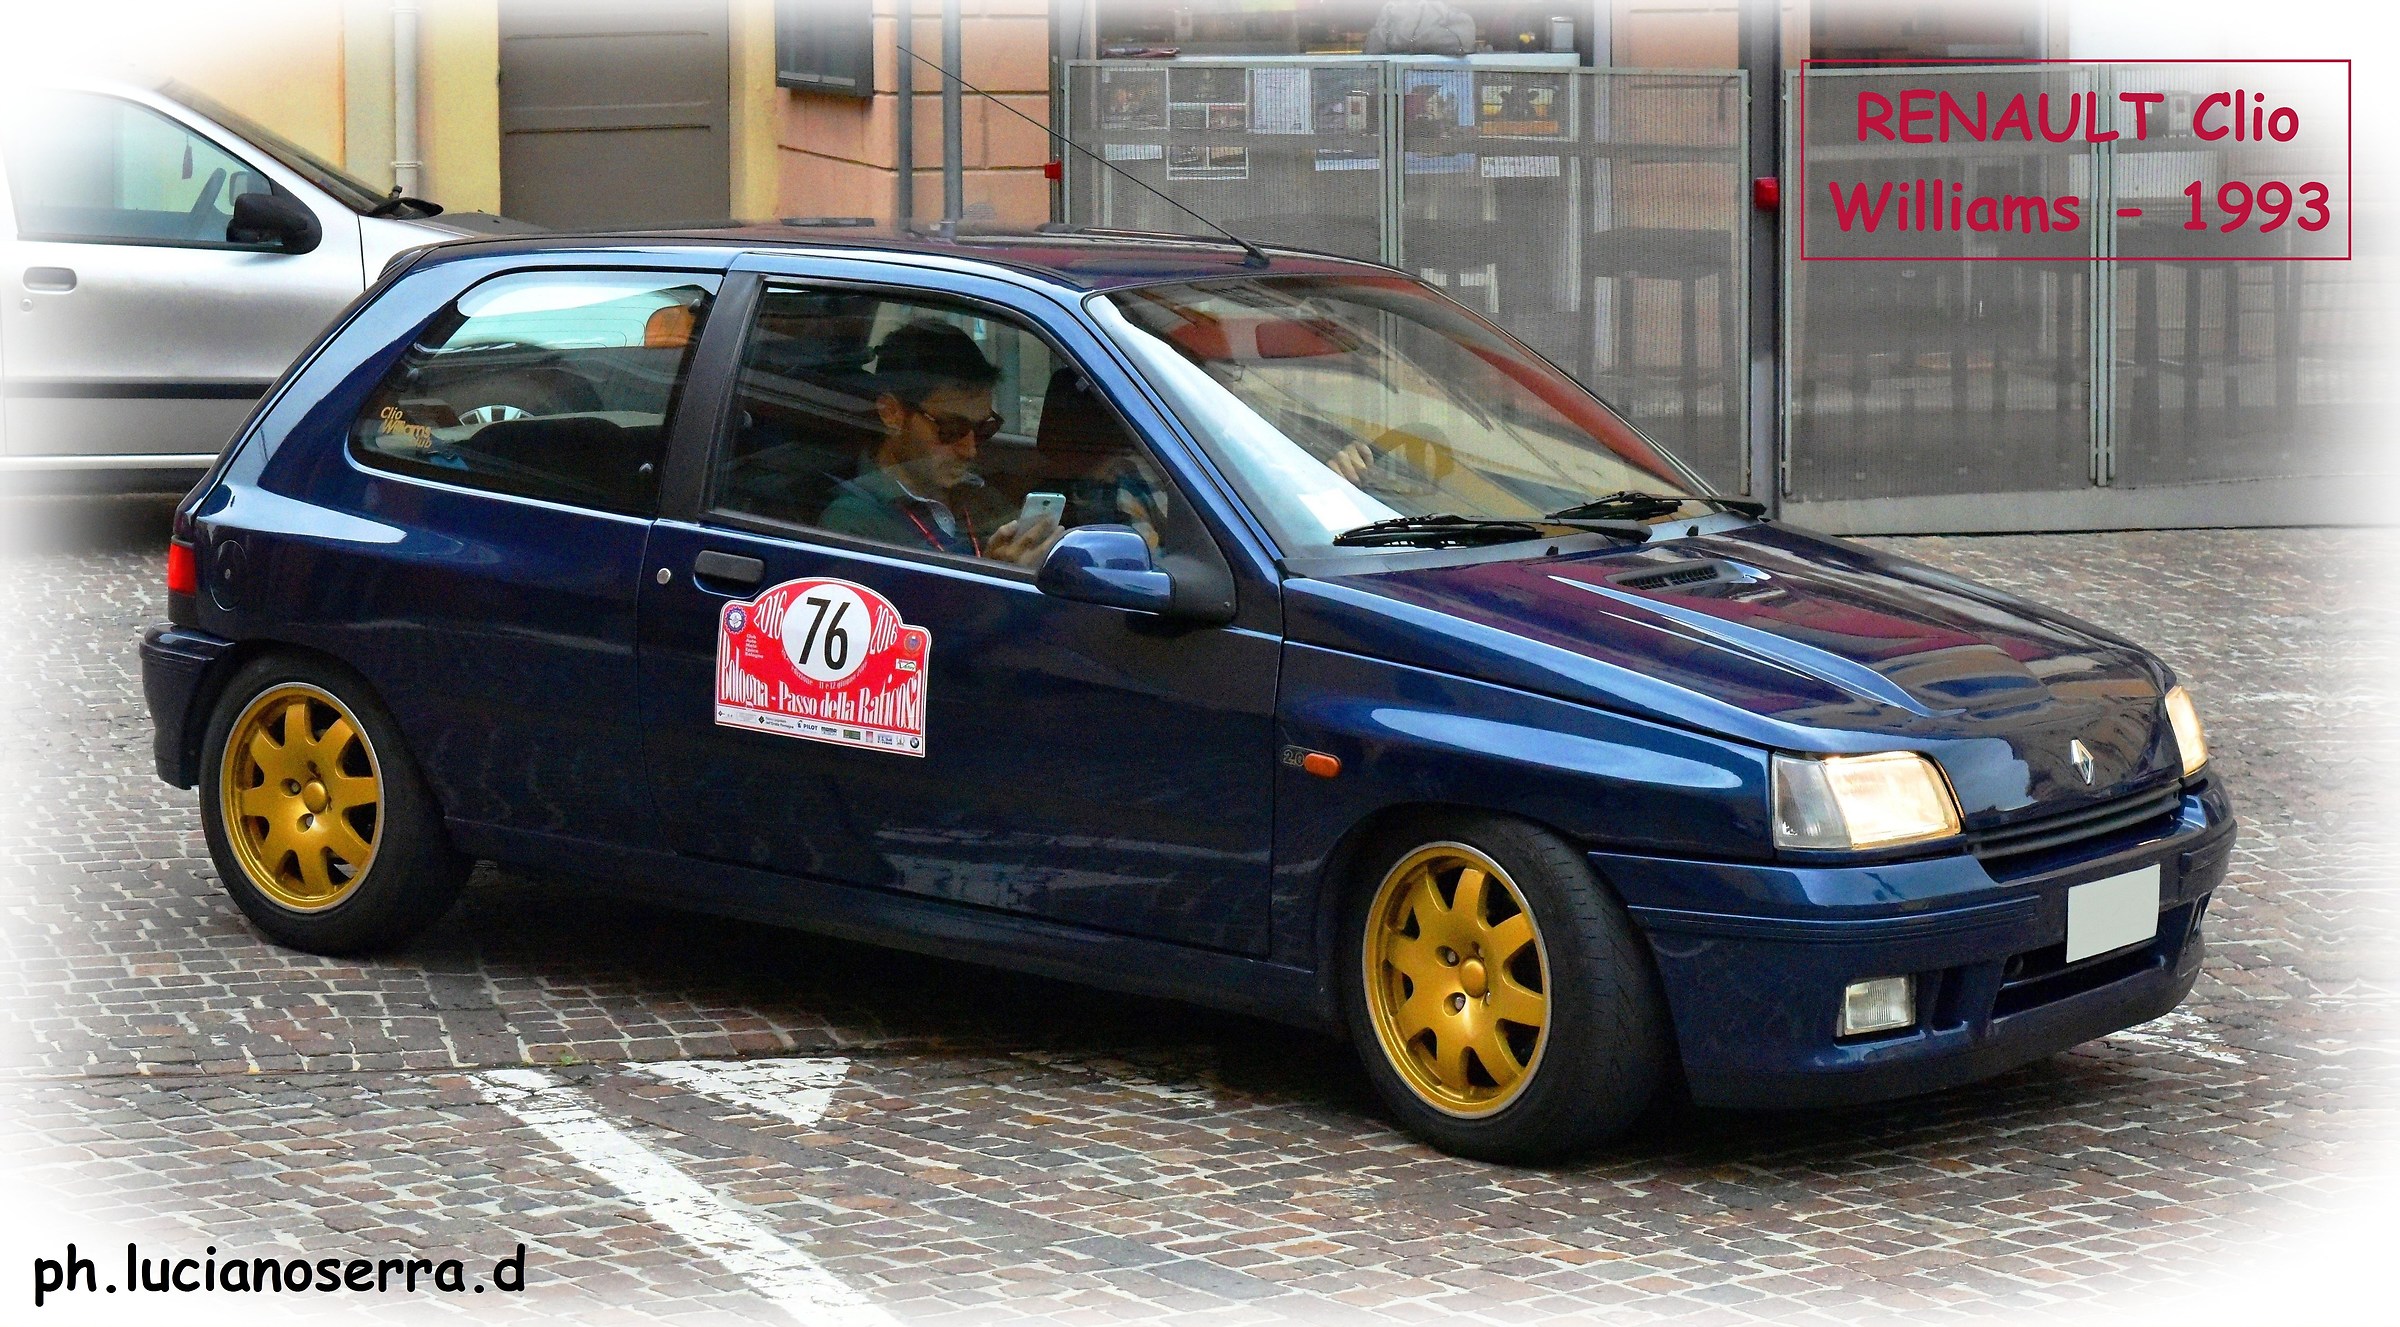 Renault Clio Williams - 1993...